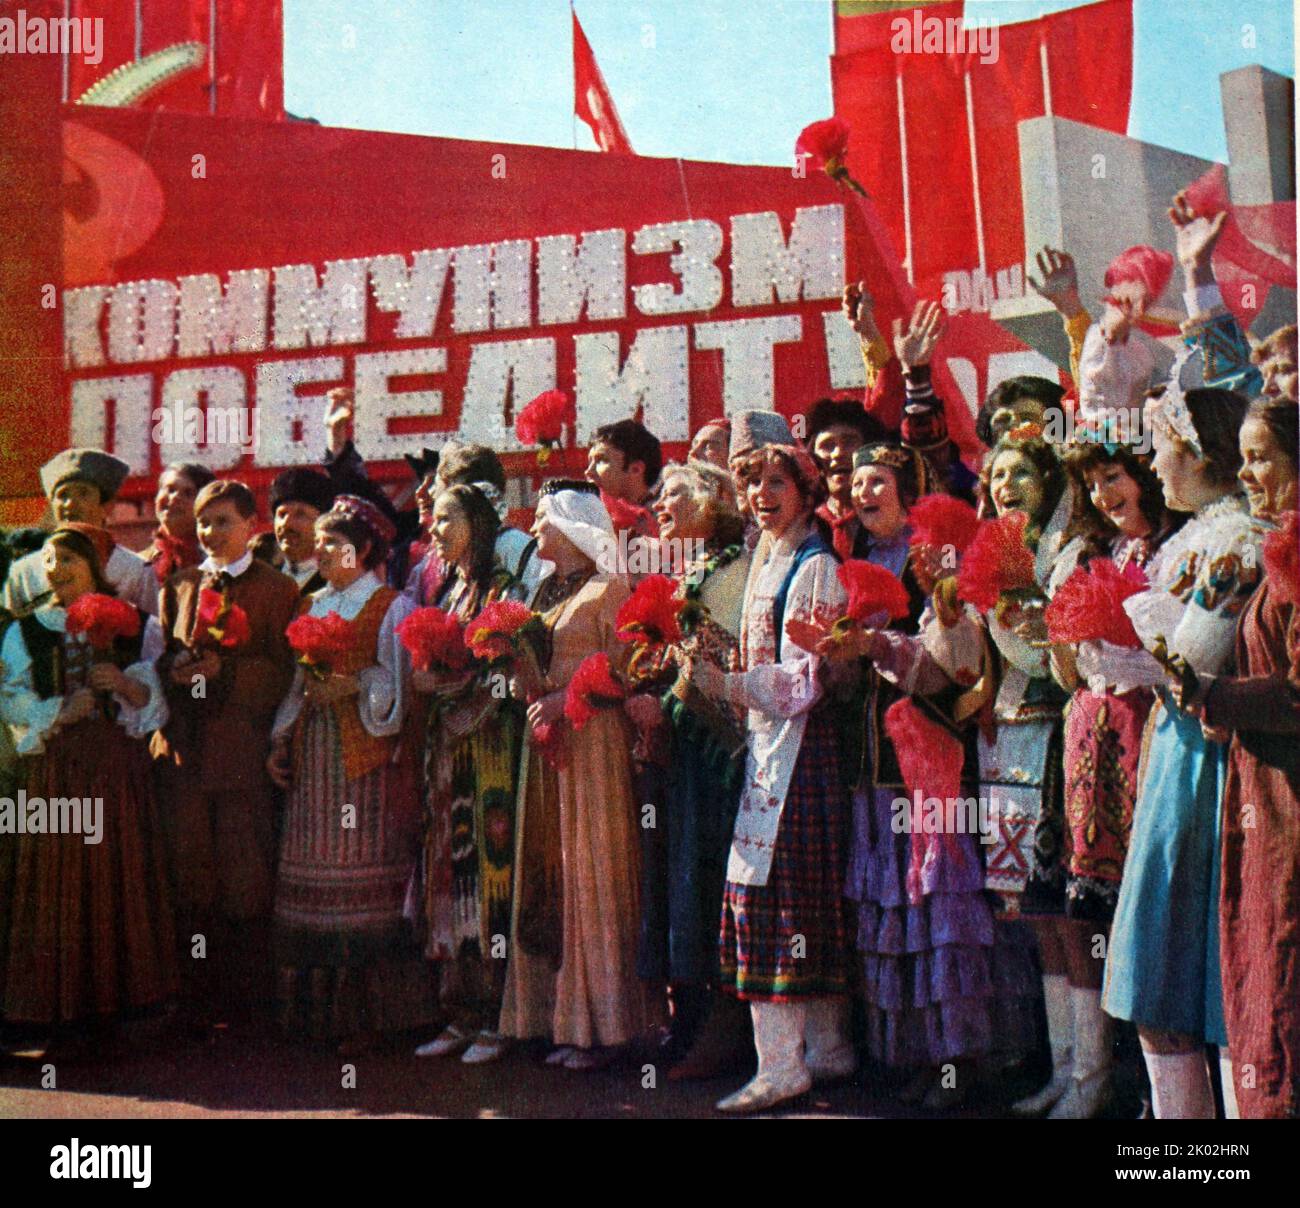 Era sovietica, fotografia propagandistica che mostra come la Russia sia composta da molteplici identità nazionali. Foto Stock